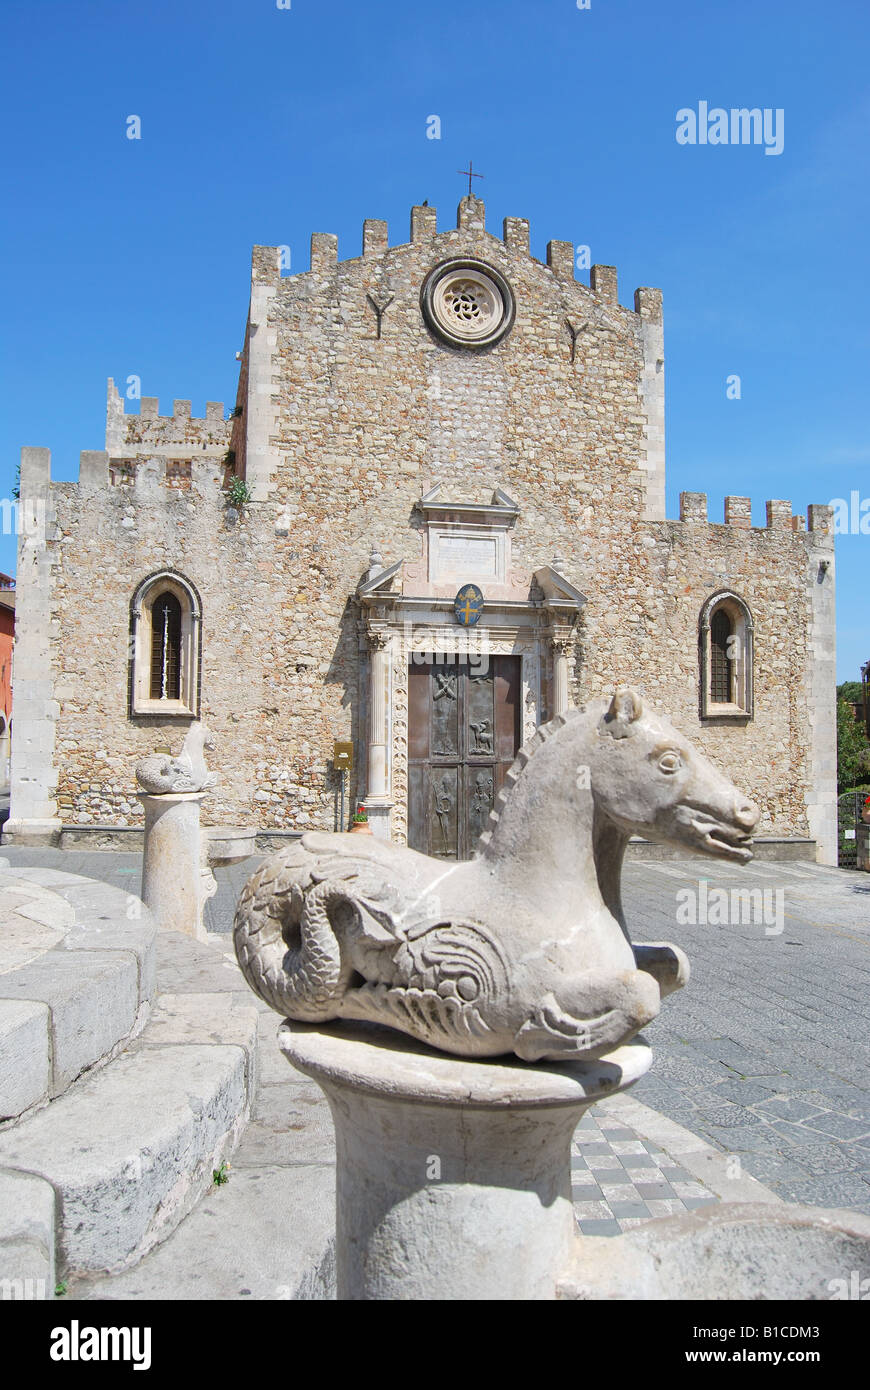 Cathédrale de Saint Nicholas et Mermaid Fountain, Piazza Duomo, province de Messine, Taormina, Sicile, Italie Banque D'Images